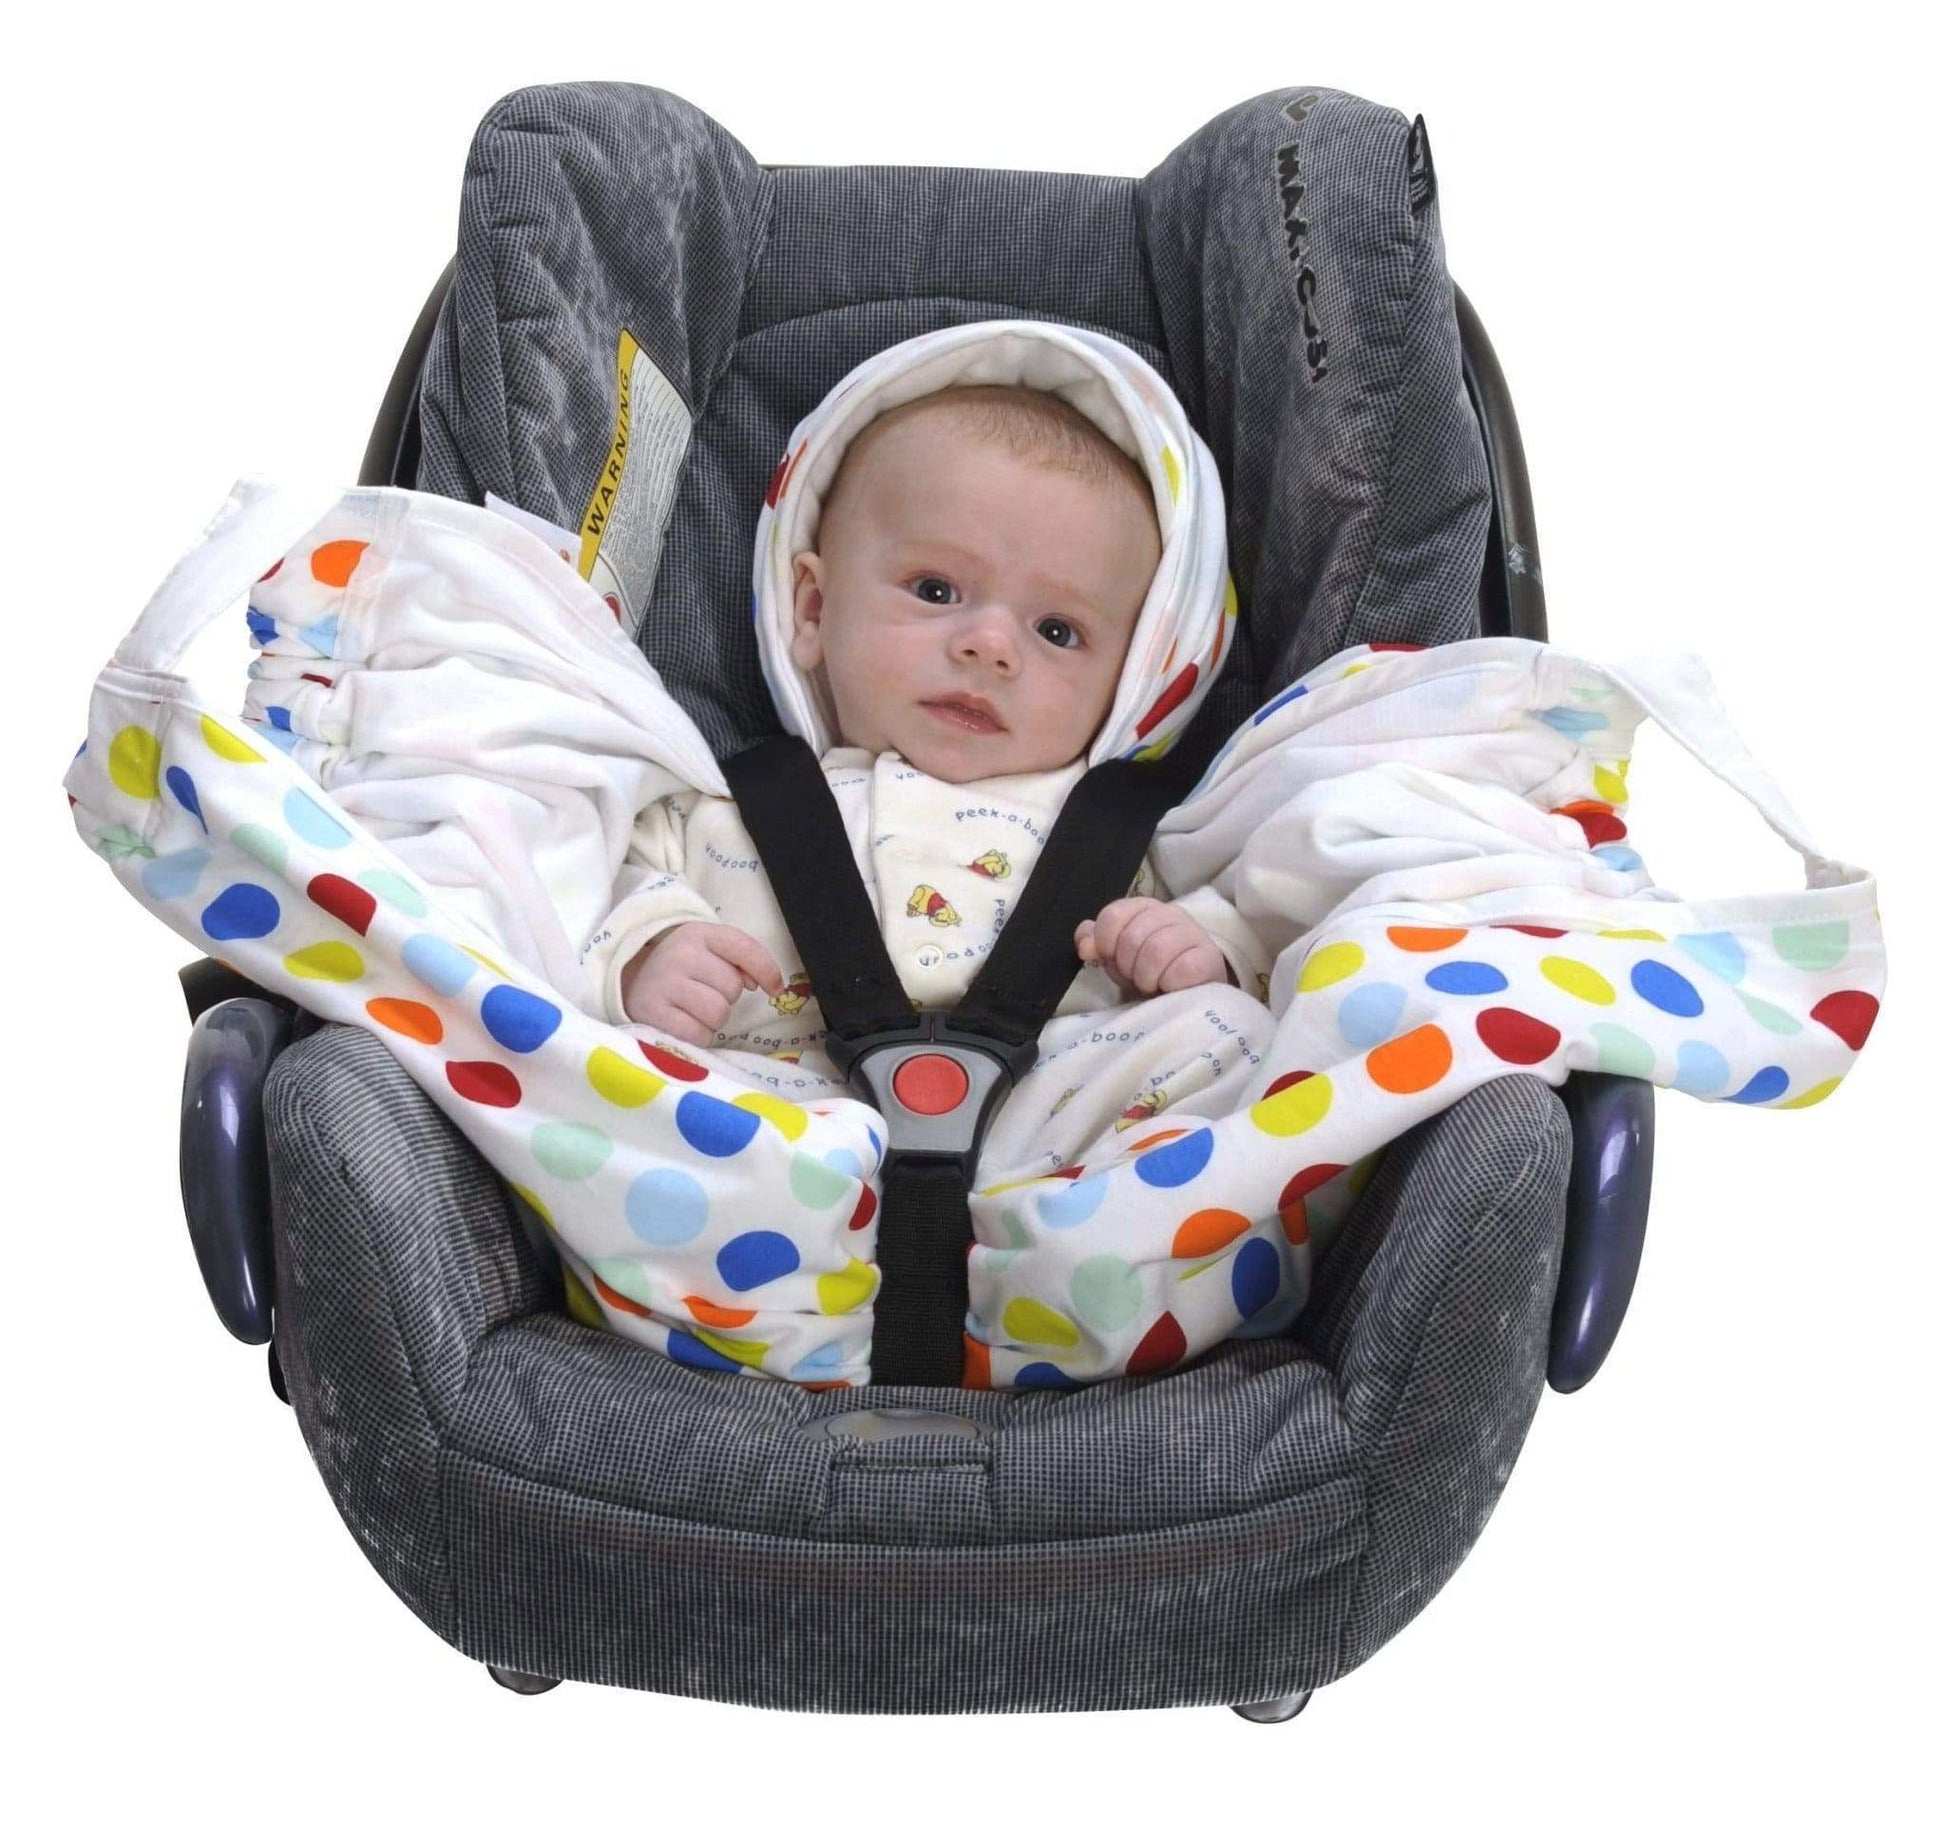 Baby Blanket-Car Seat Cover-Play Mat-A Horizon Dawn - A Horizon Dawn